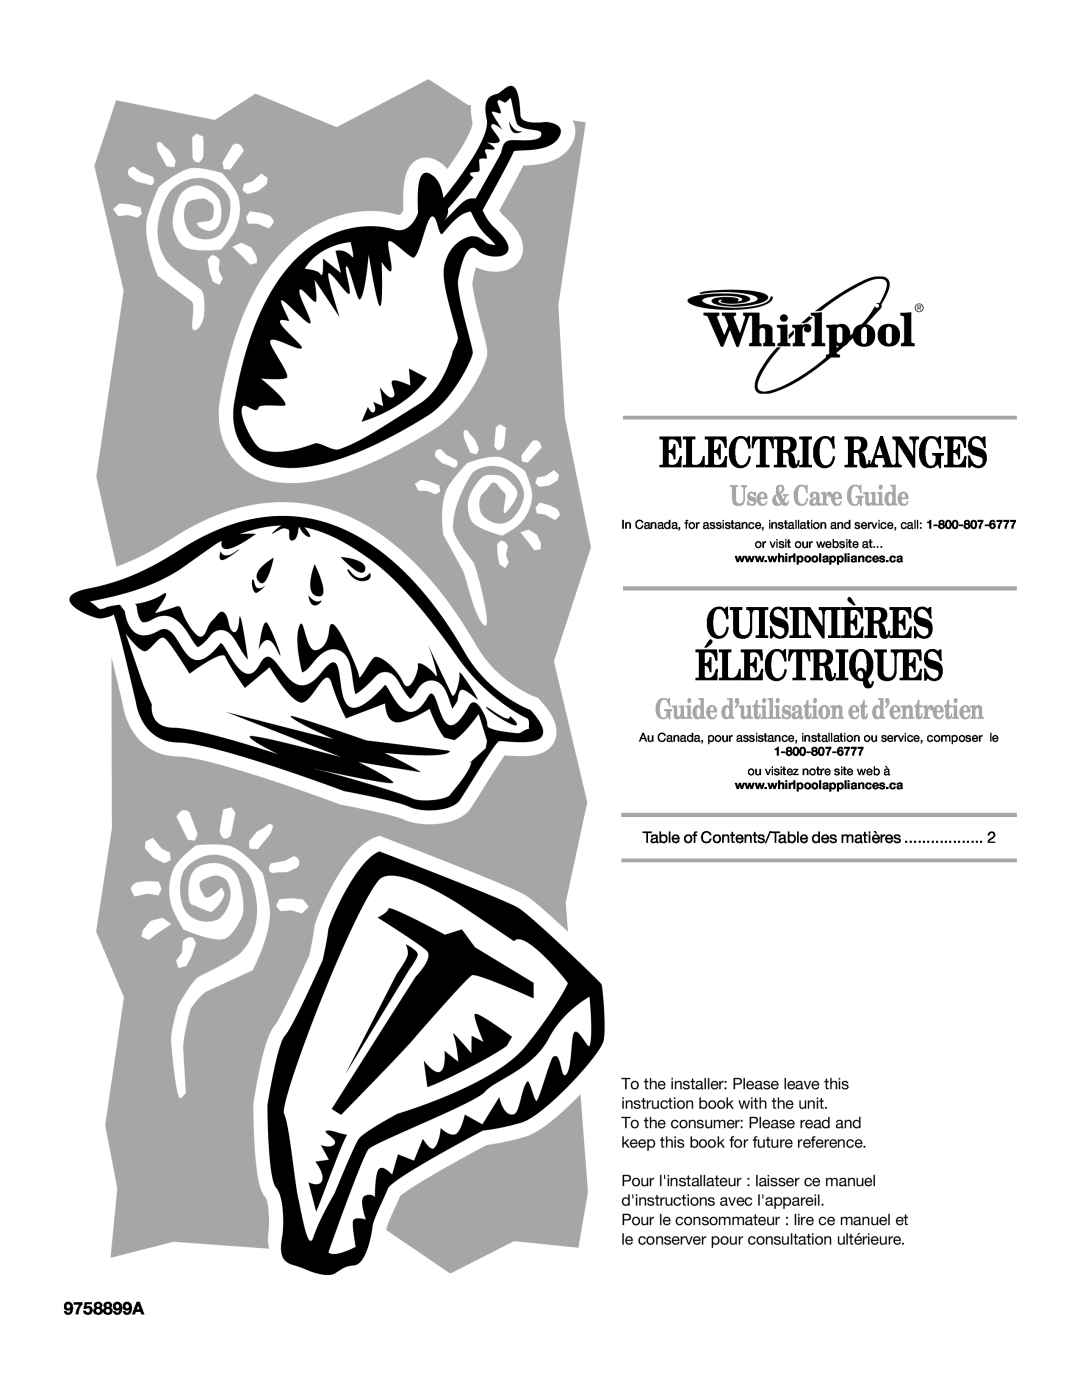 Whirlpool GERC4110PB0 manual 9758899A, Electric Ranges, Cuisinières Électriques, Use & Care Guide 